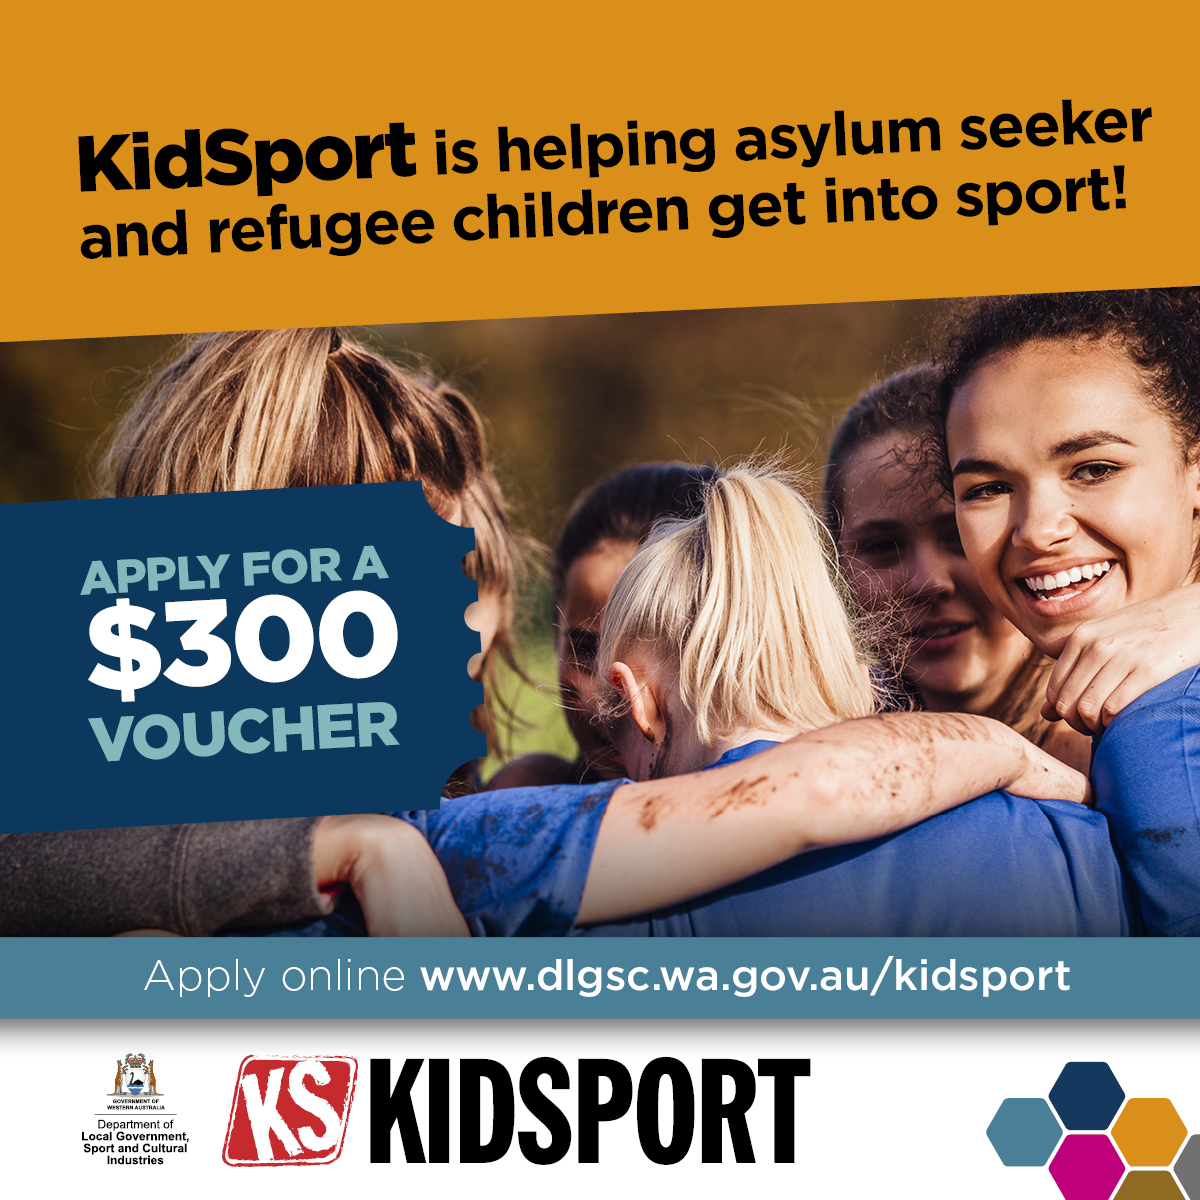 Social media tile to promote KidSport for asylum seeker and refugee children